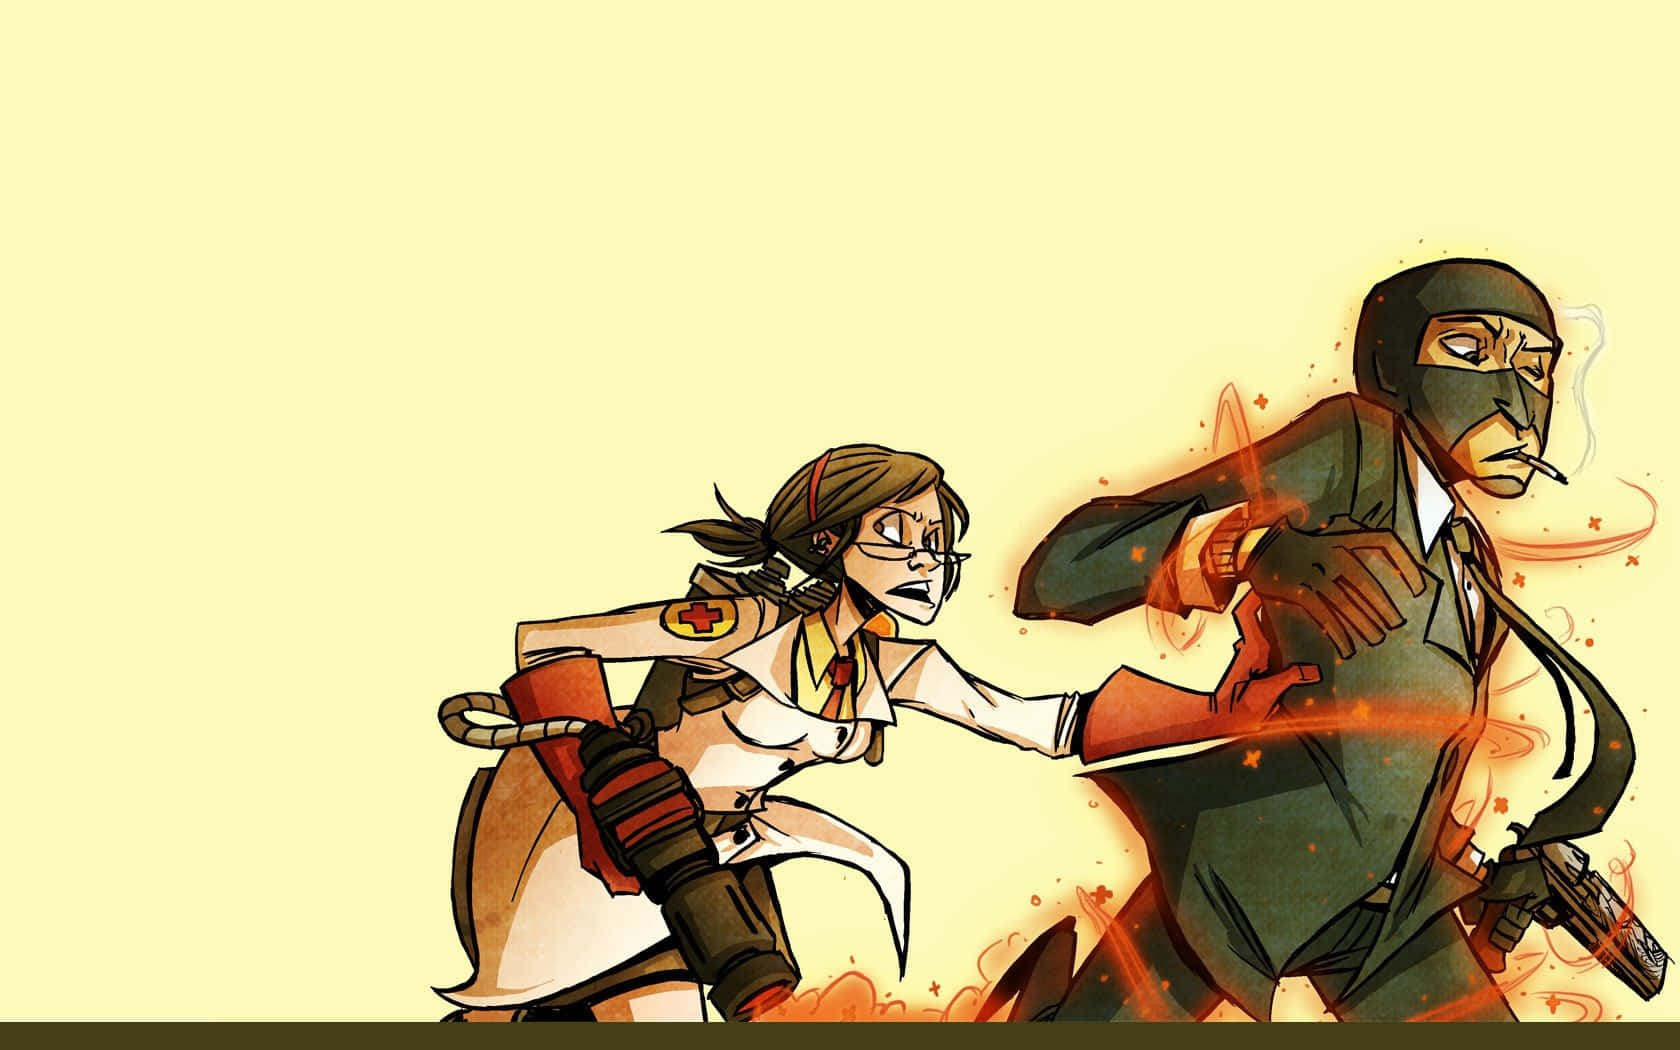 Et tegneseriebillede af to personer, der kæmper i ilden. Wallpaper